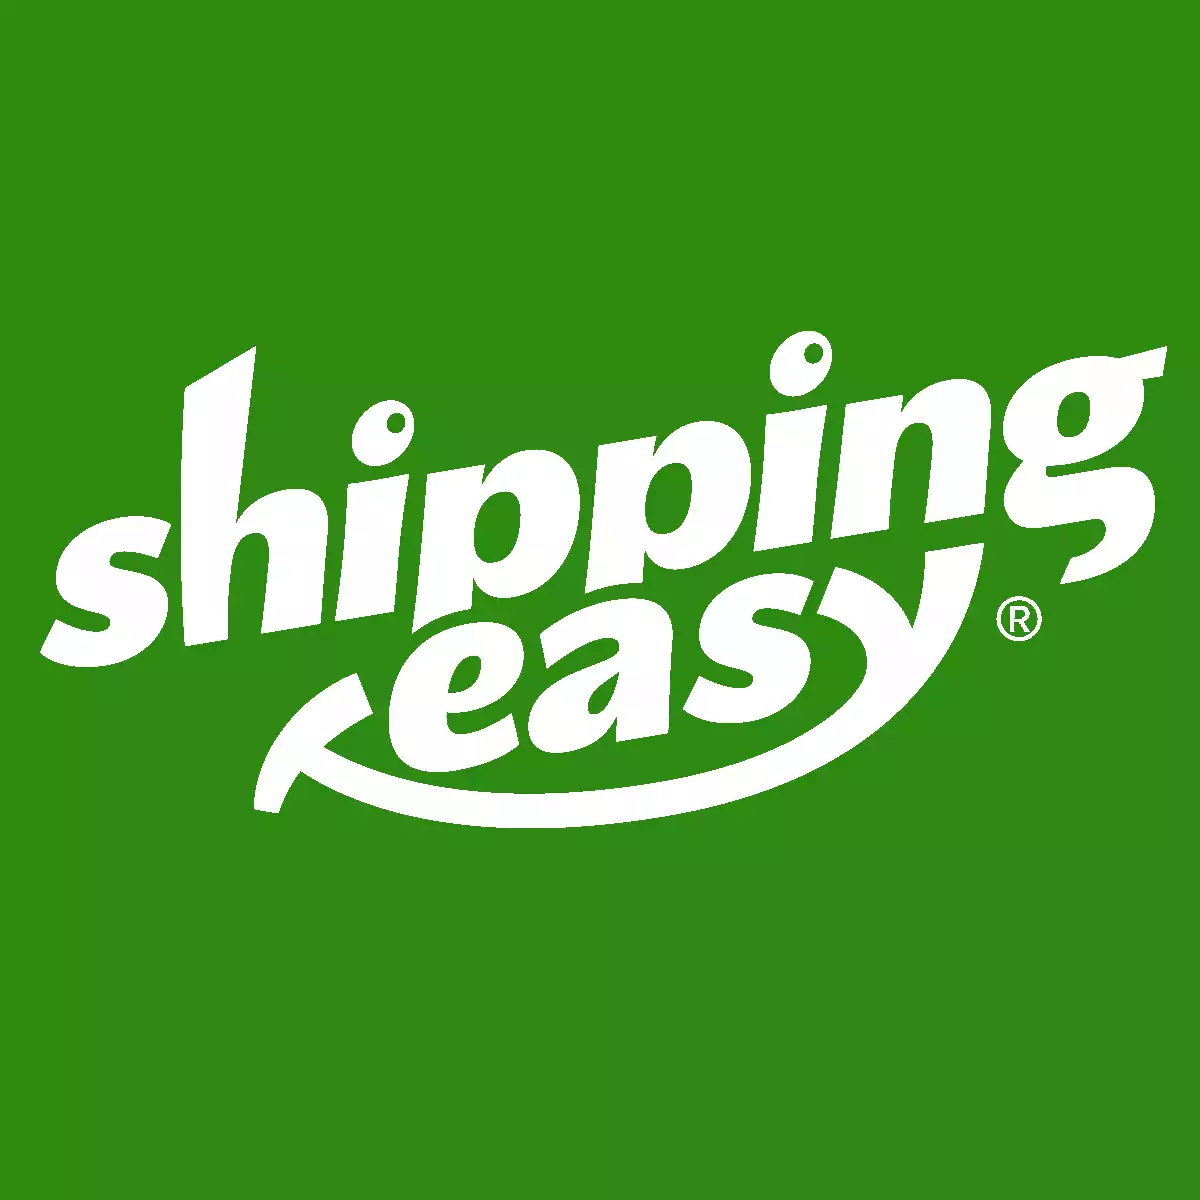 Warum ich ShippingEasy bevorzuge